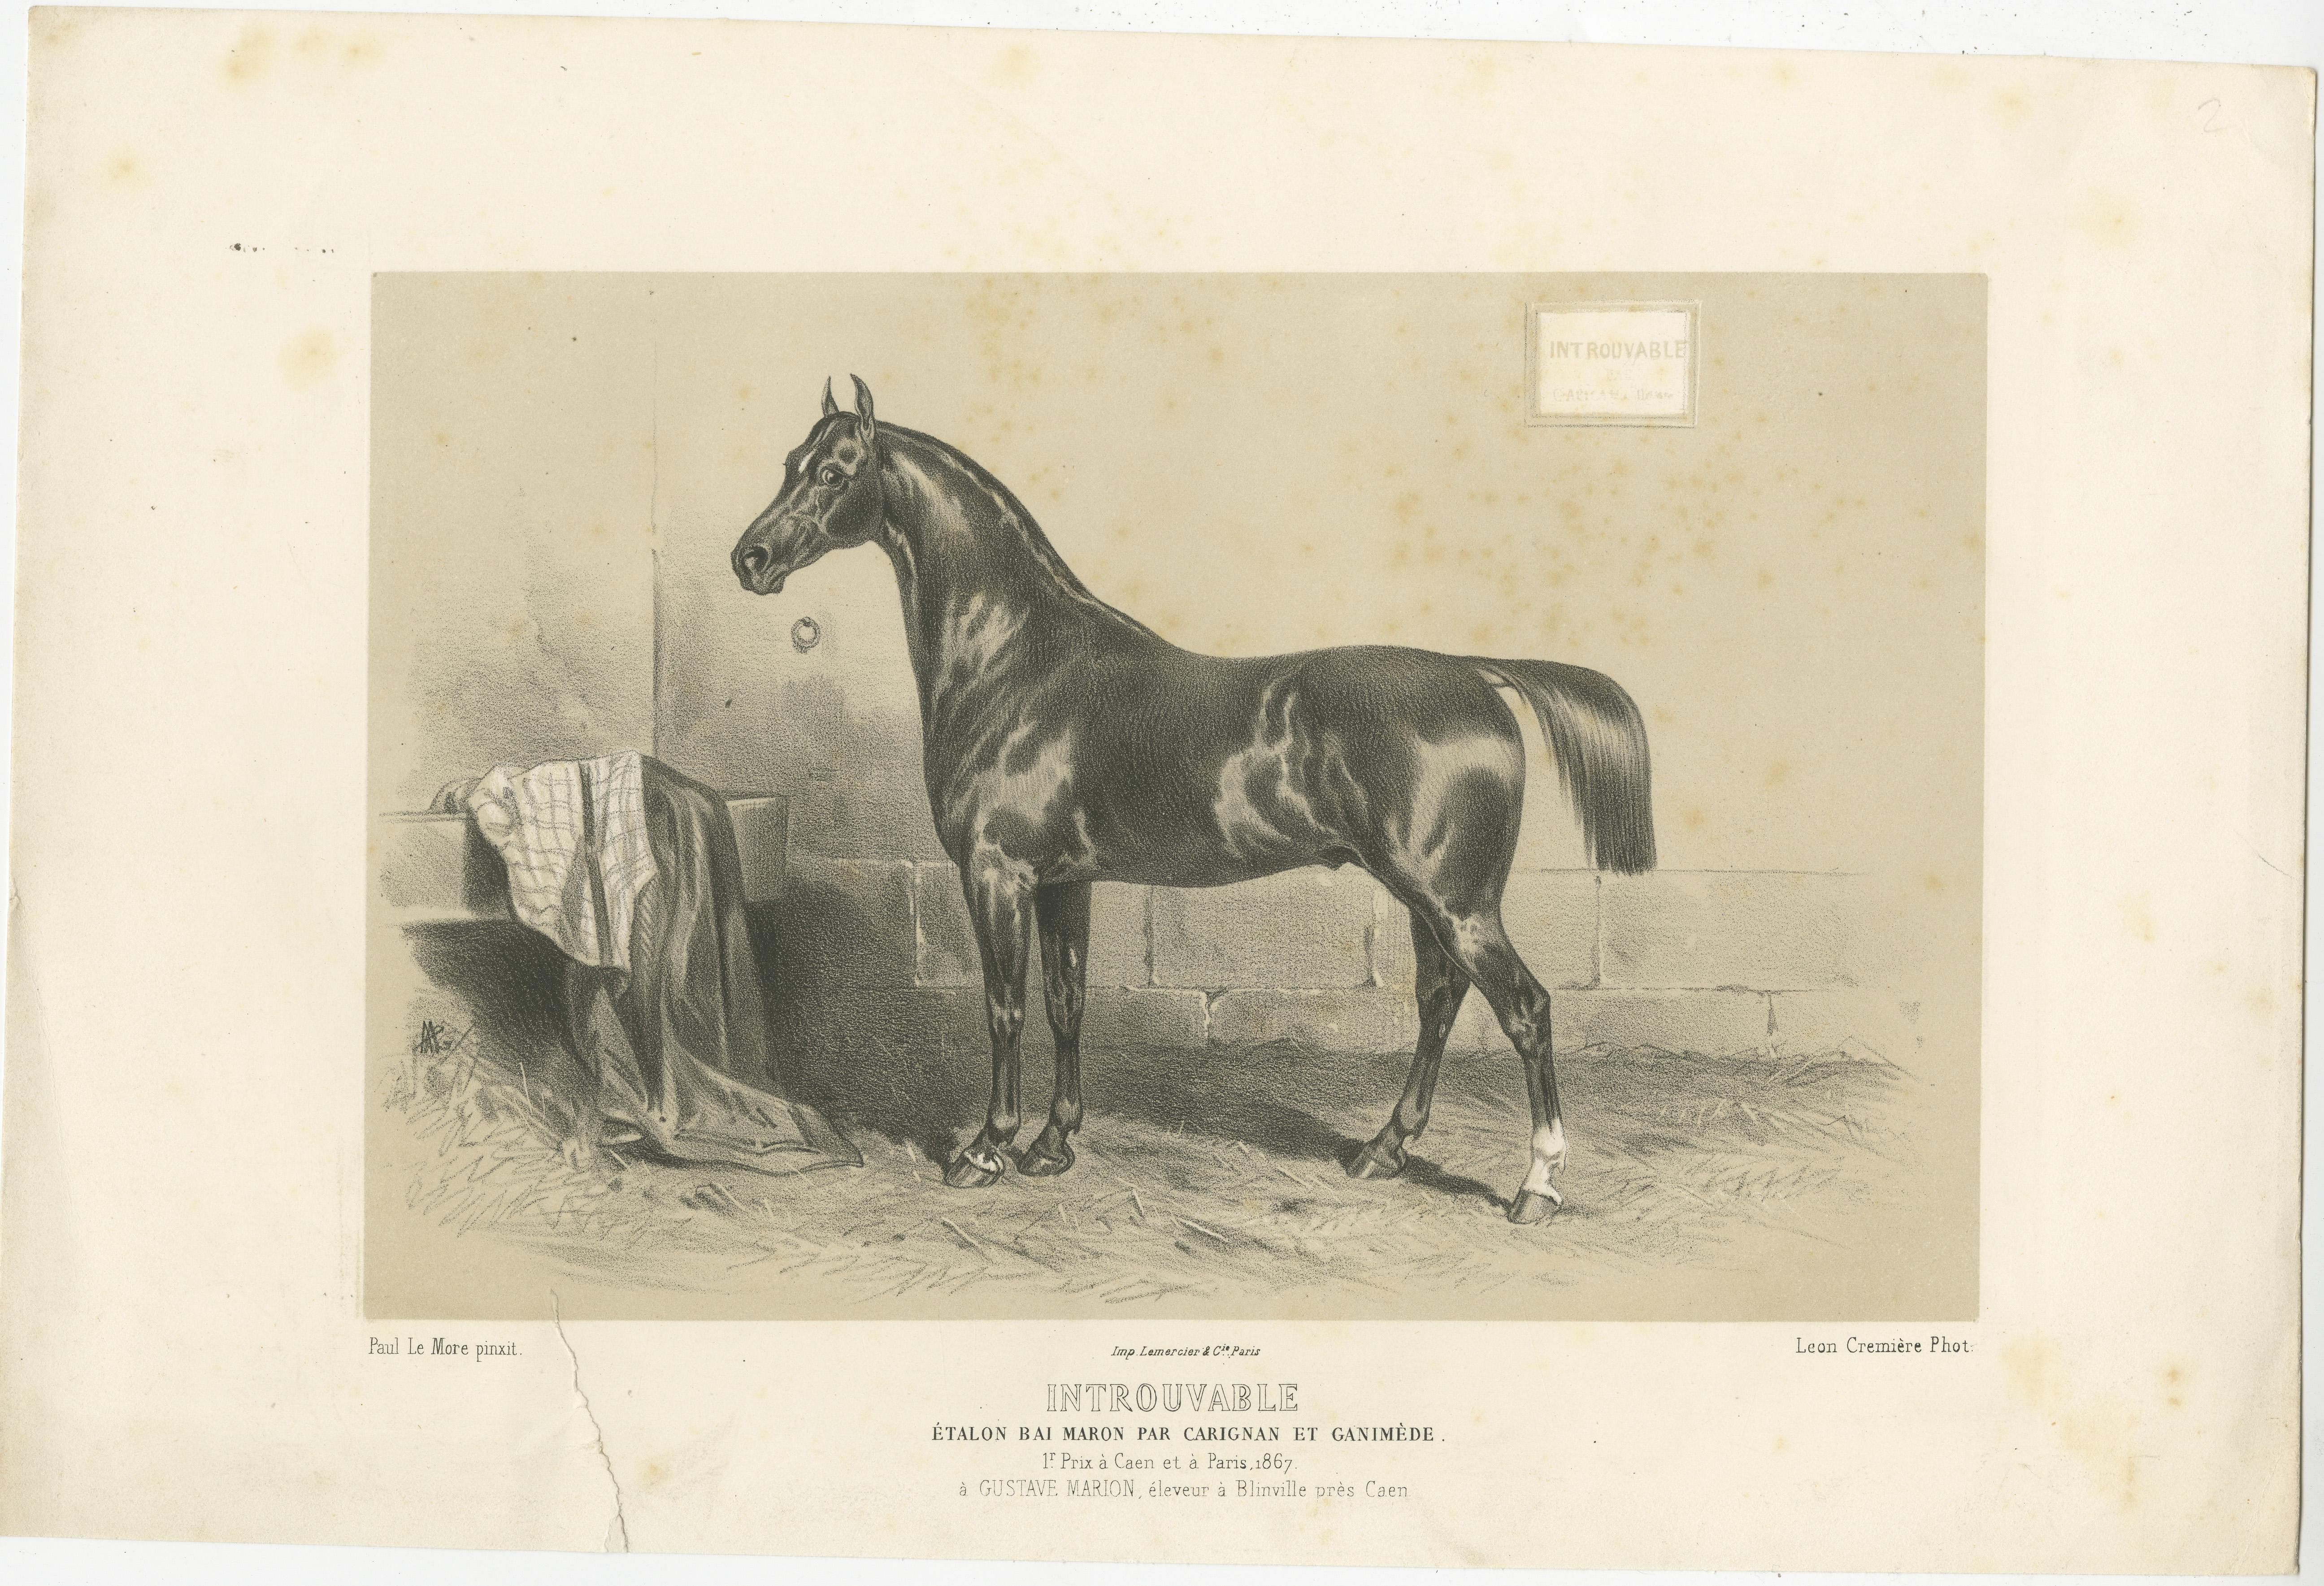 Antique print titled 'Introuvable. Étalon bai Maron par Carignan et Ganimède'. Lithograph of the horse 'Introuvable'. Published in Paris by Lemercier & Cie after a painting by Paul le More, circa 1870.